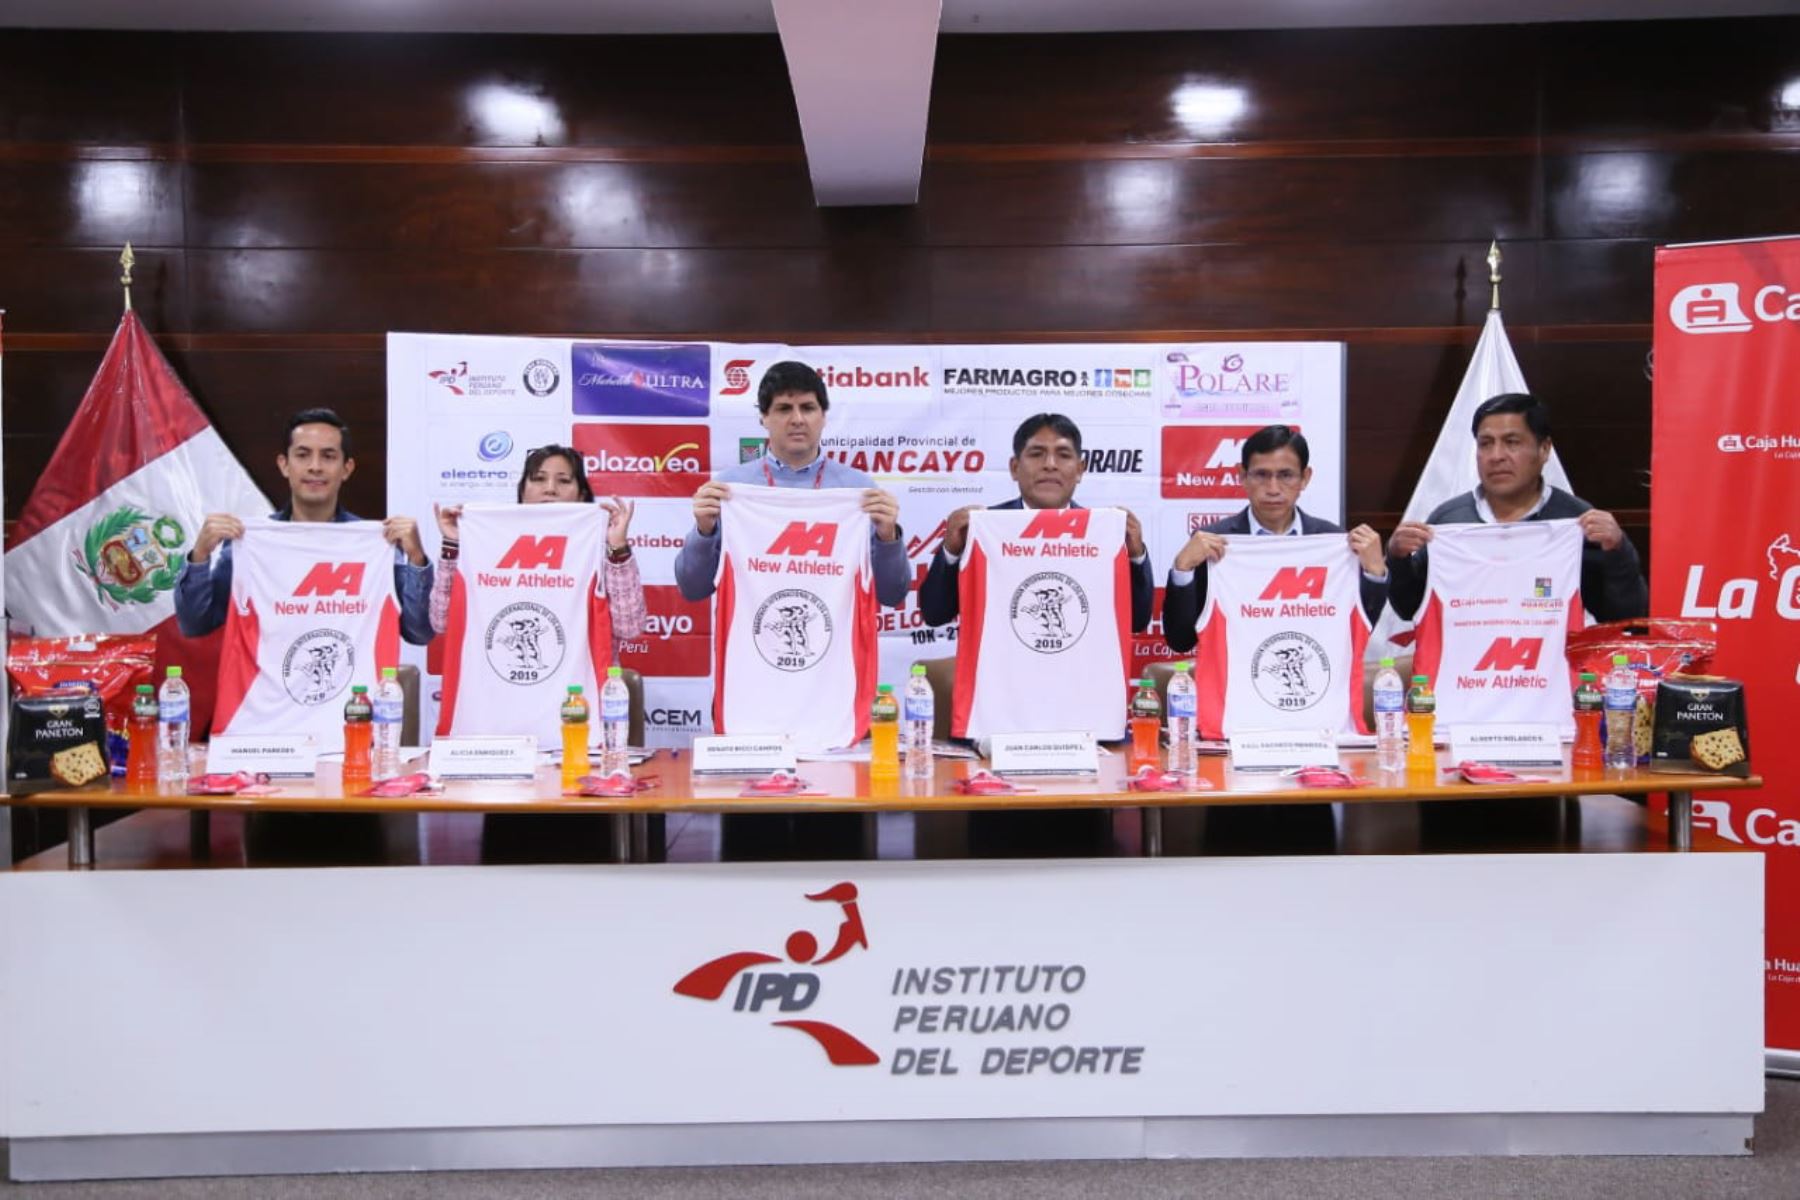 Esta es la camiseta oficial de la  XXXV edición de la Maratón Internacional de Los Andes 2019, que se efectuará el 10 de noviembre en la región Junín.